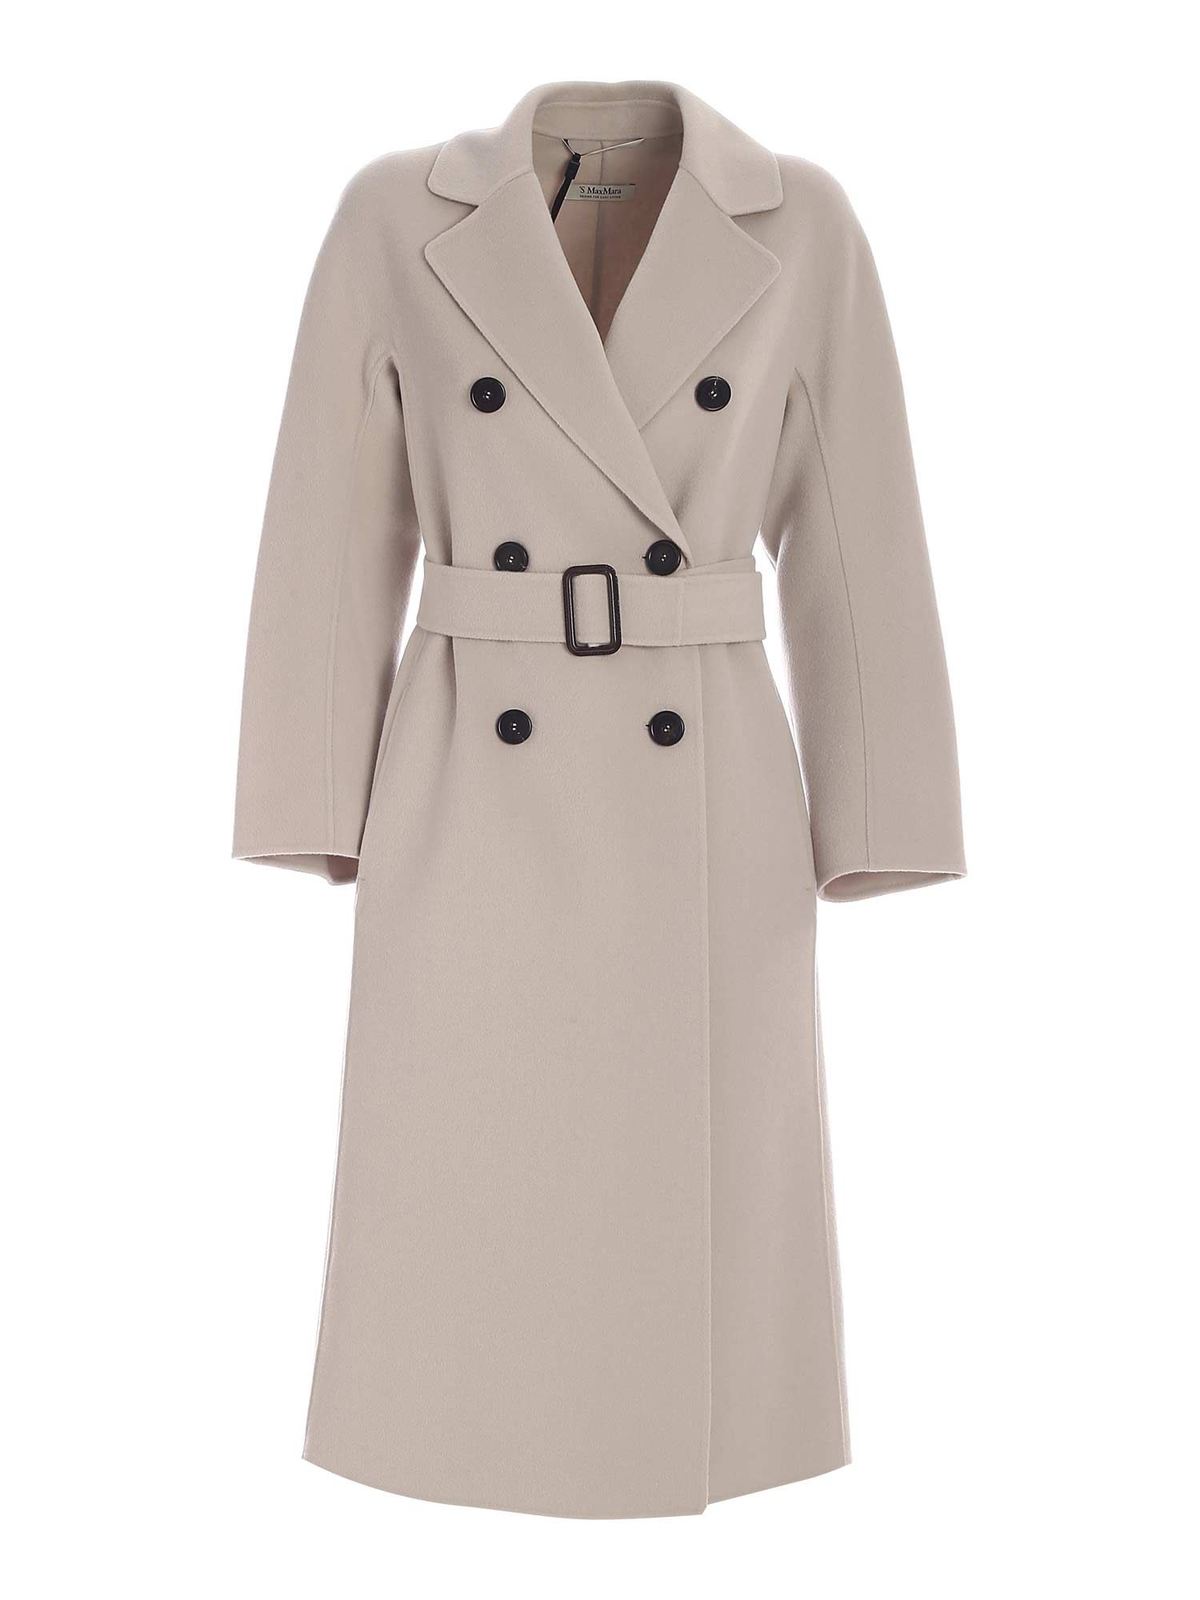 S Max Mara - Ronnie coat in Sabbia color - long coats - 90160519000088